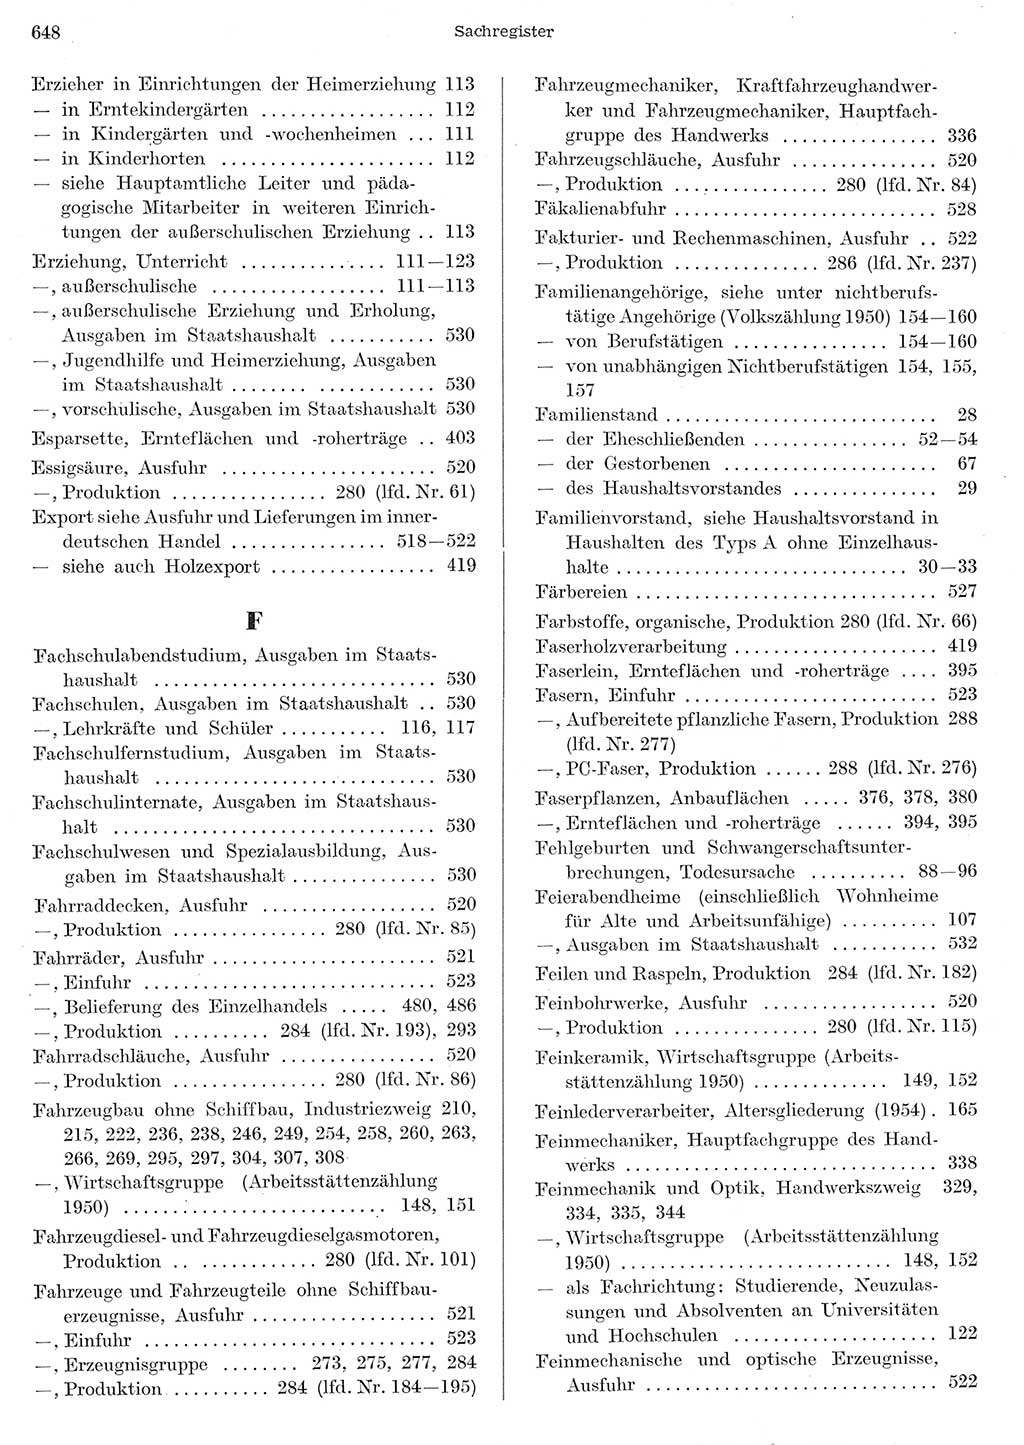 Statistisches Jahrbuch der Deutschen Demokratischen Republik (DDR) 1956, Seite 648 (Stat. Jb. DDR 1956, S. 648)